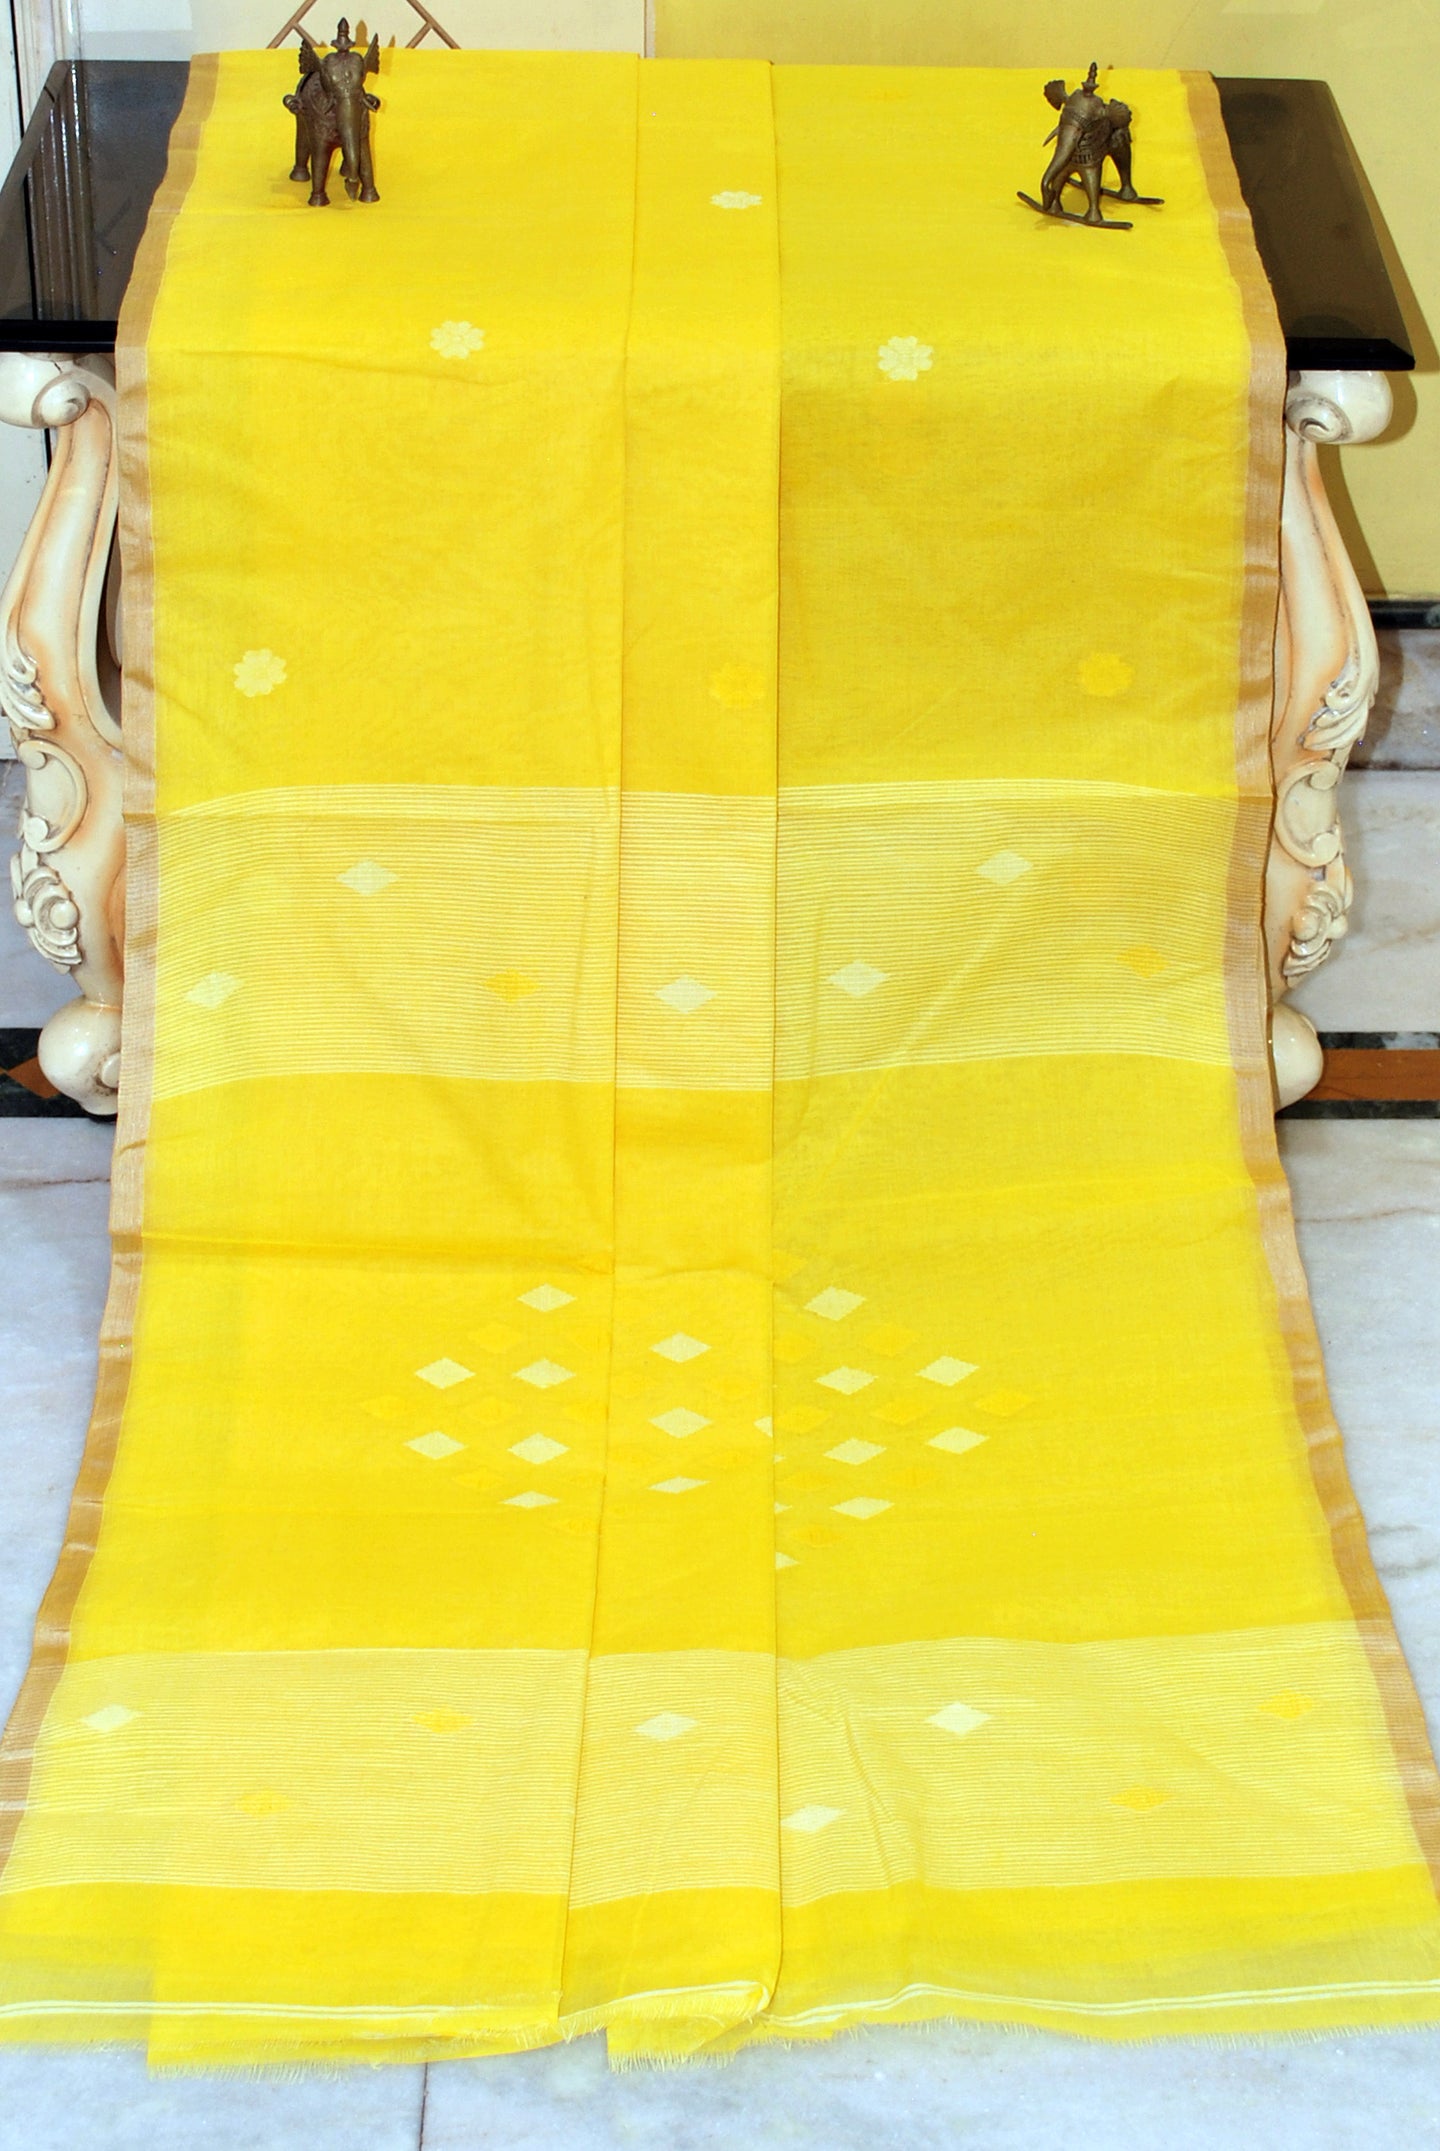 Rhombus Motif Pallu Hand Work Cotton Dhakai Jamdani Saree in Bright Yellow and White